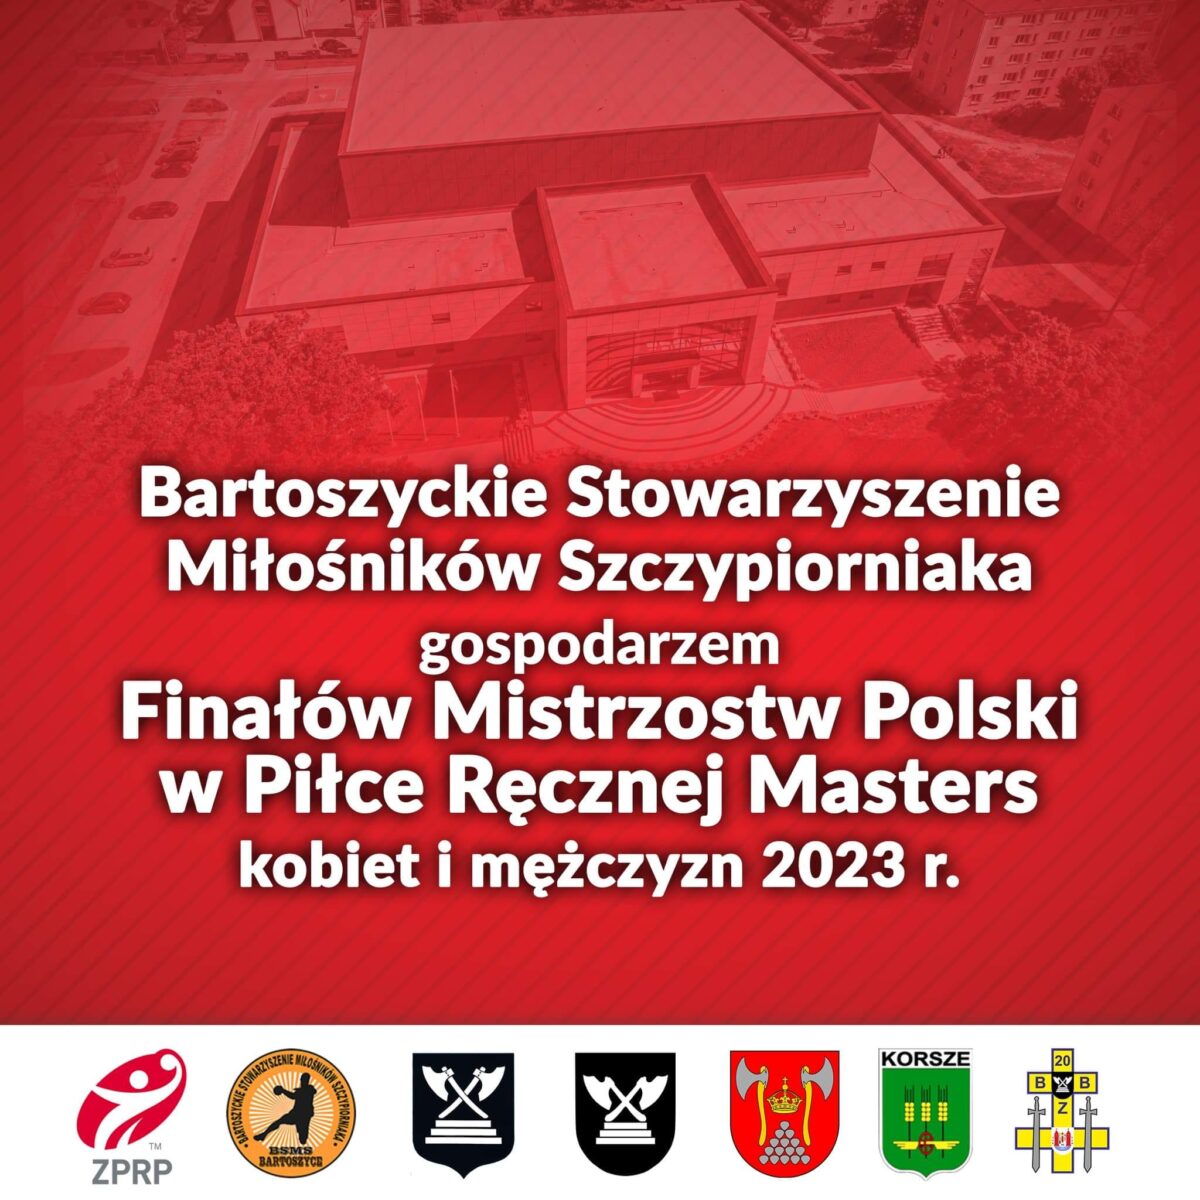 BSMS Bartoszyce gospodarzem Finałów Mistrzostw Polski Masters kobiet i mężczyzn!